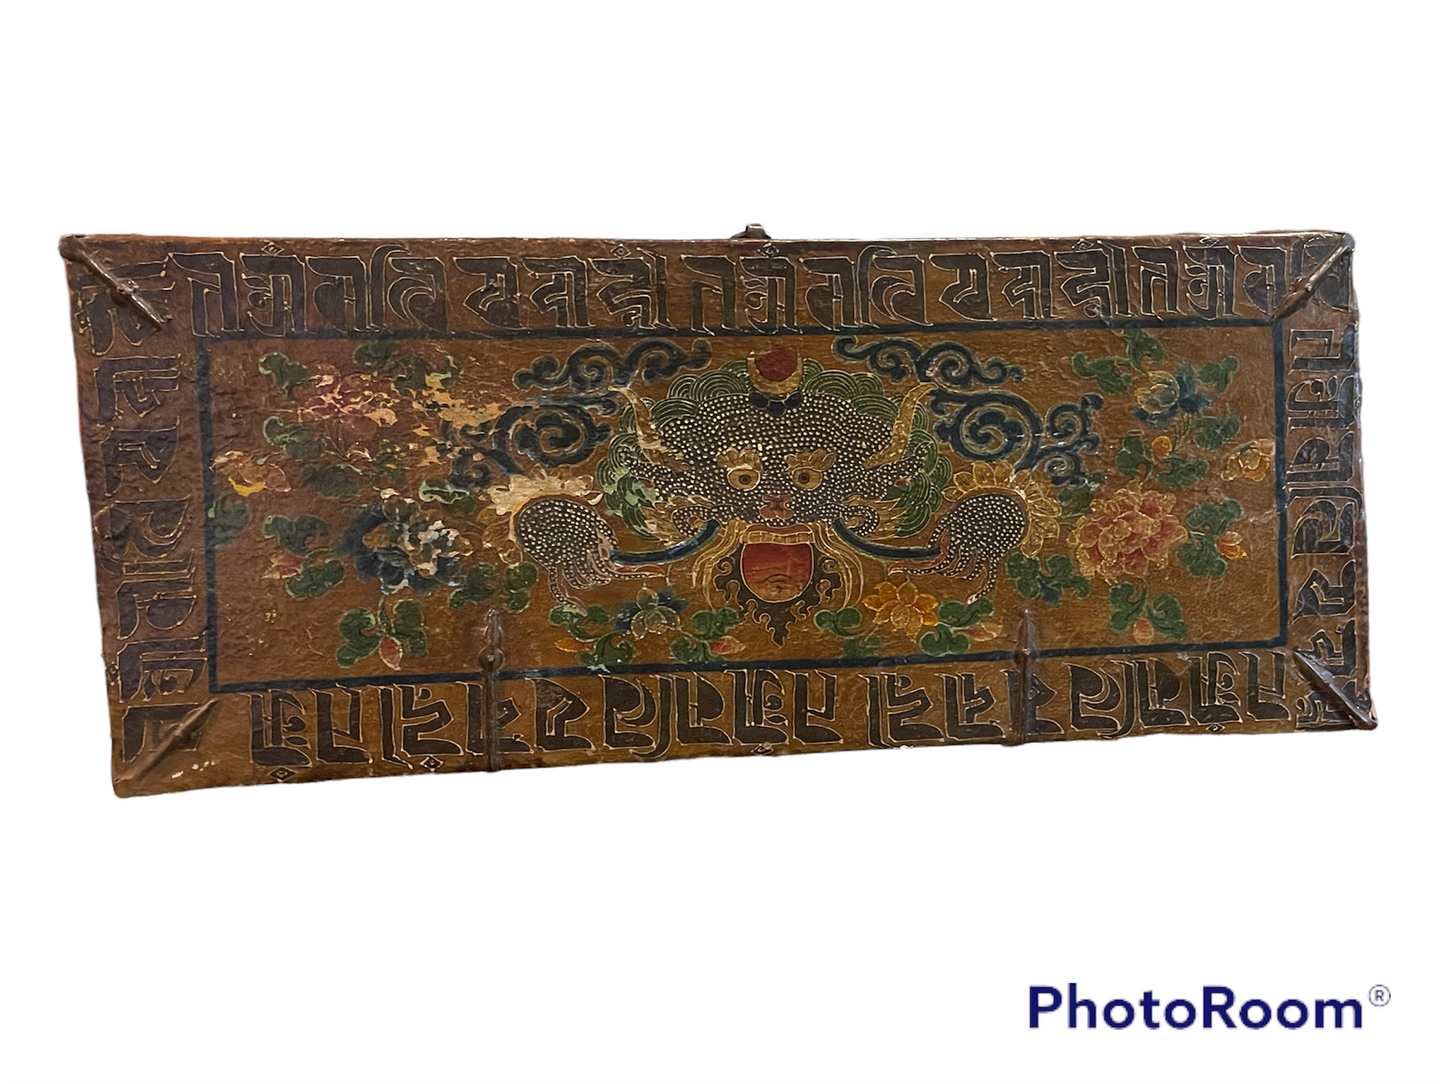 An antique Tibetan wooden chest